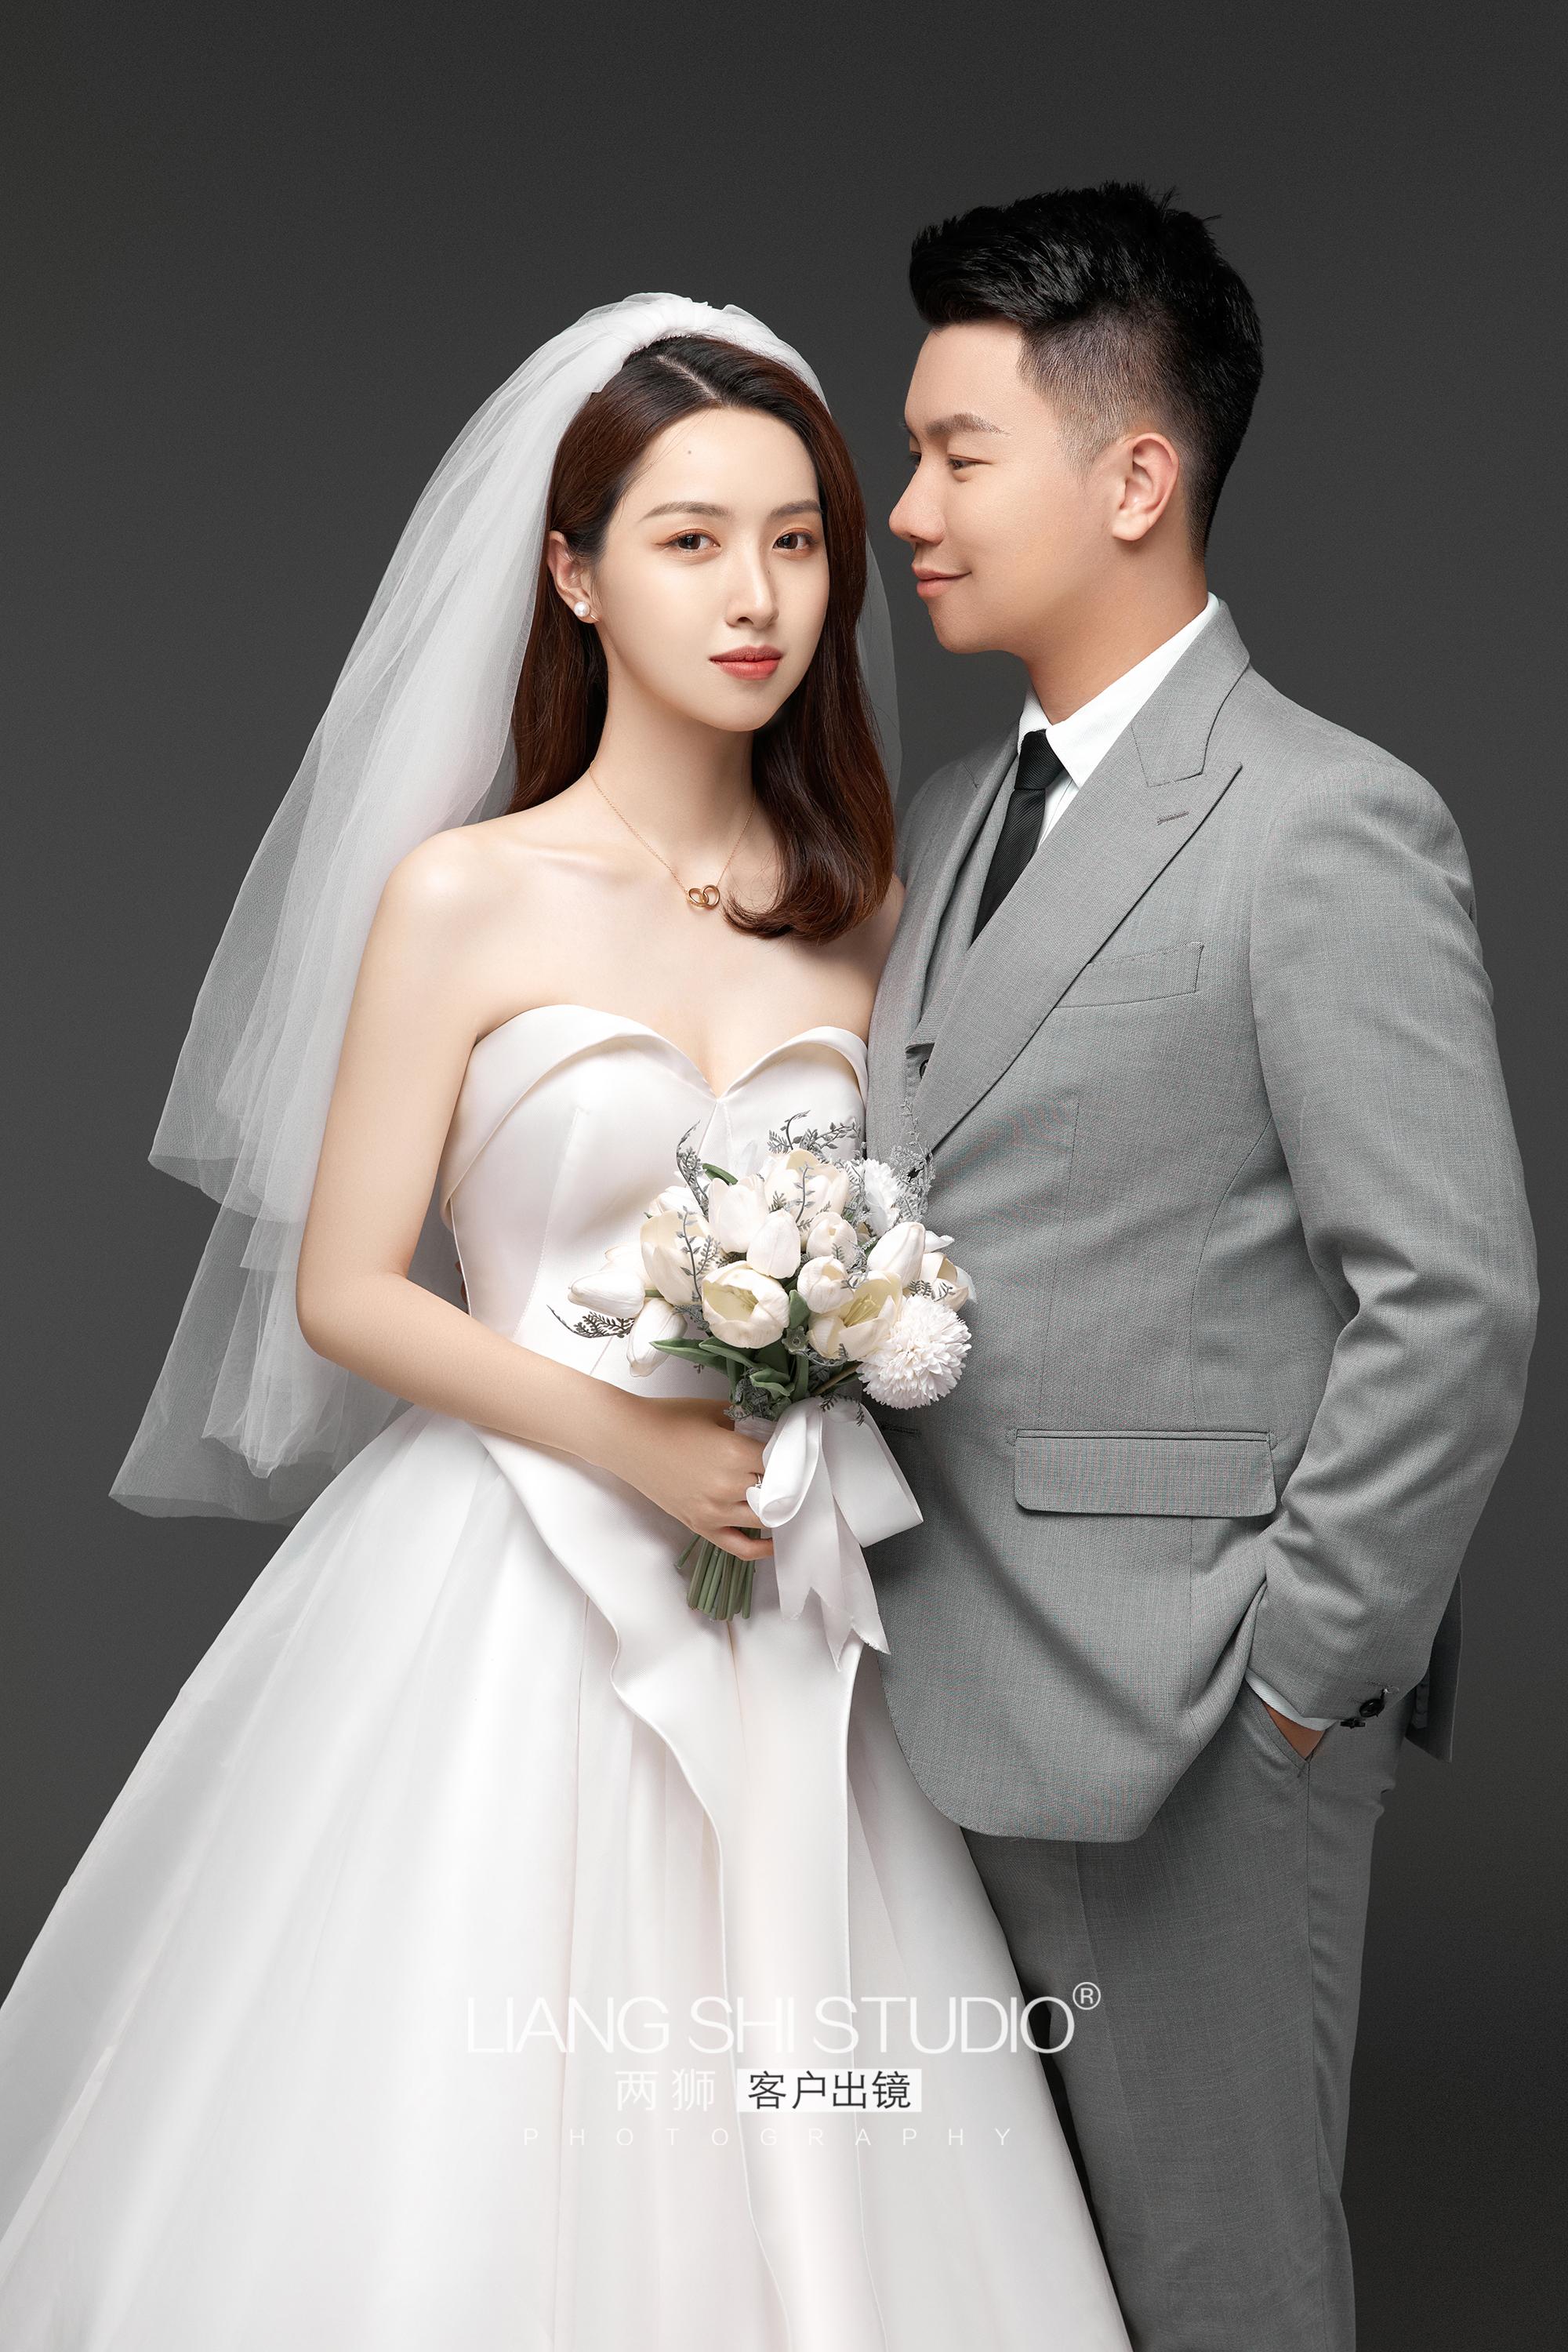 拍了今年最的婚纱照风格,韩式极简风